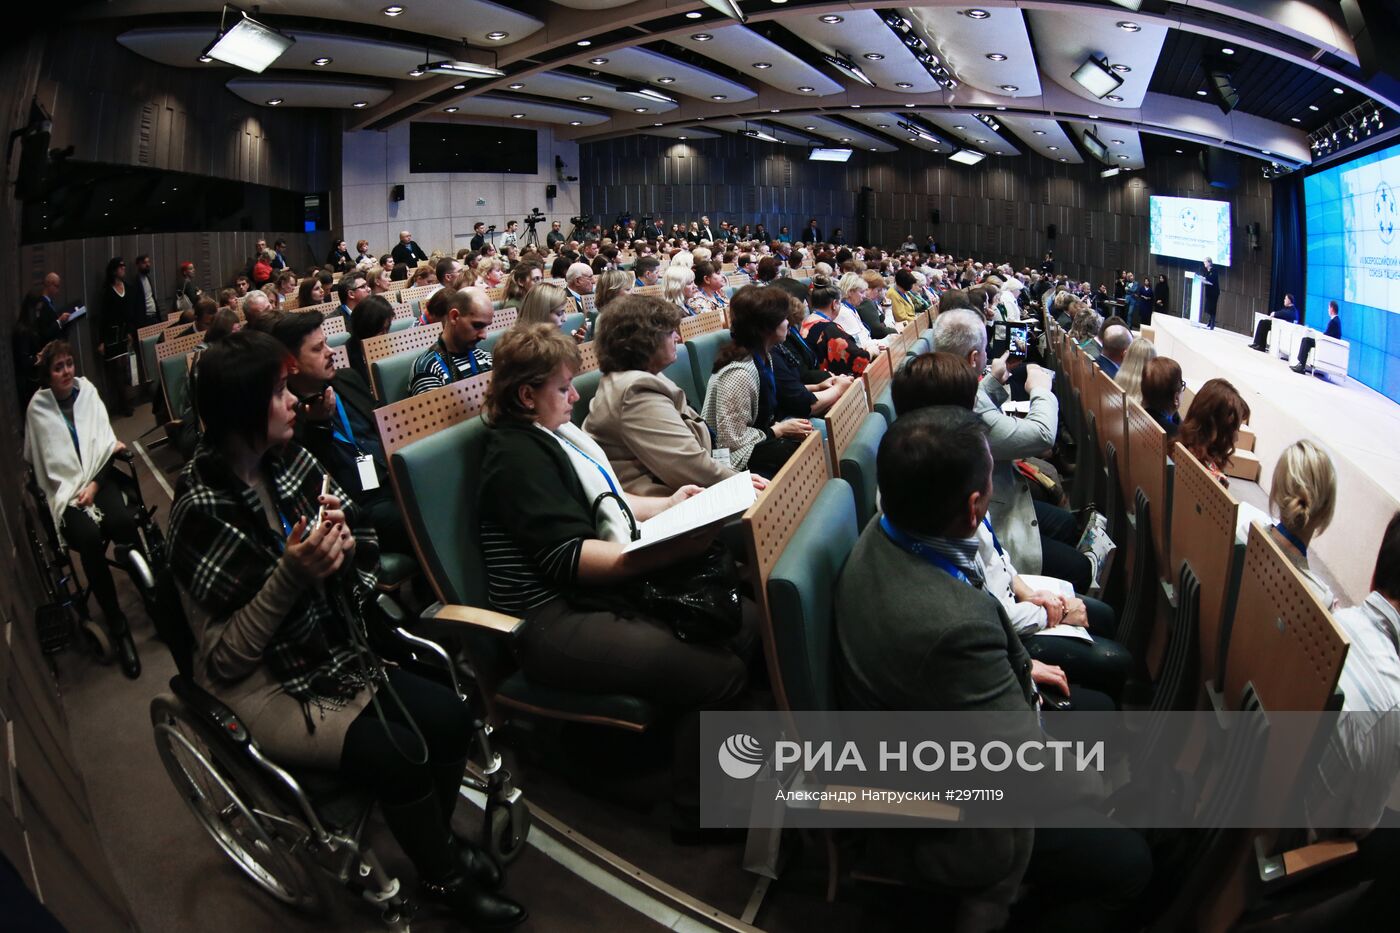 VII Всероссийский конгресс пациентов